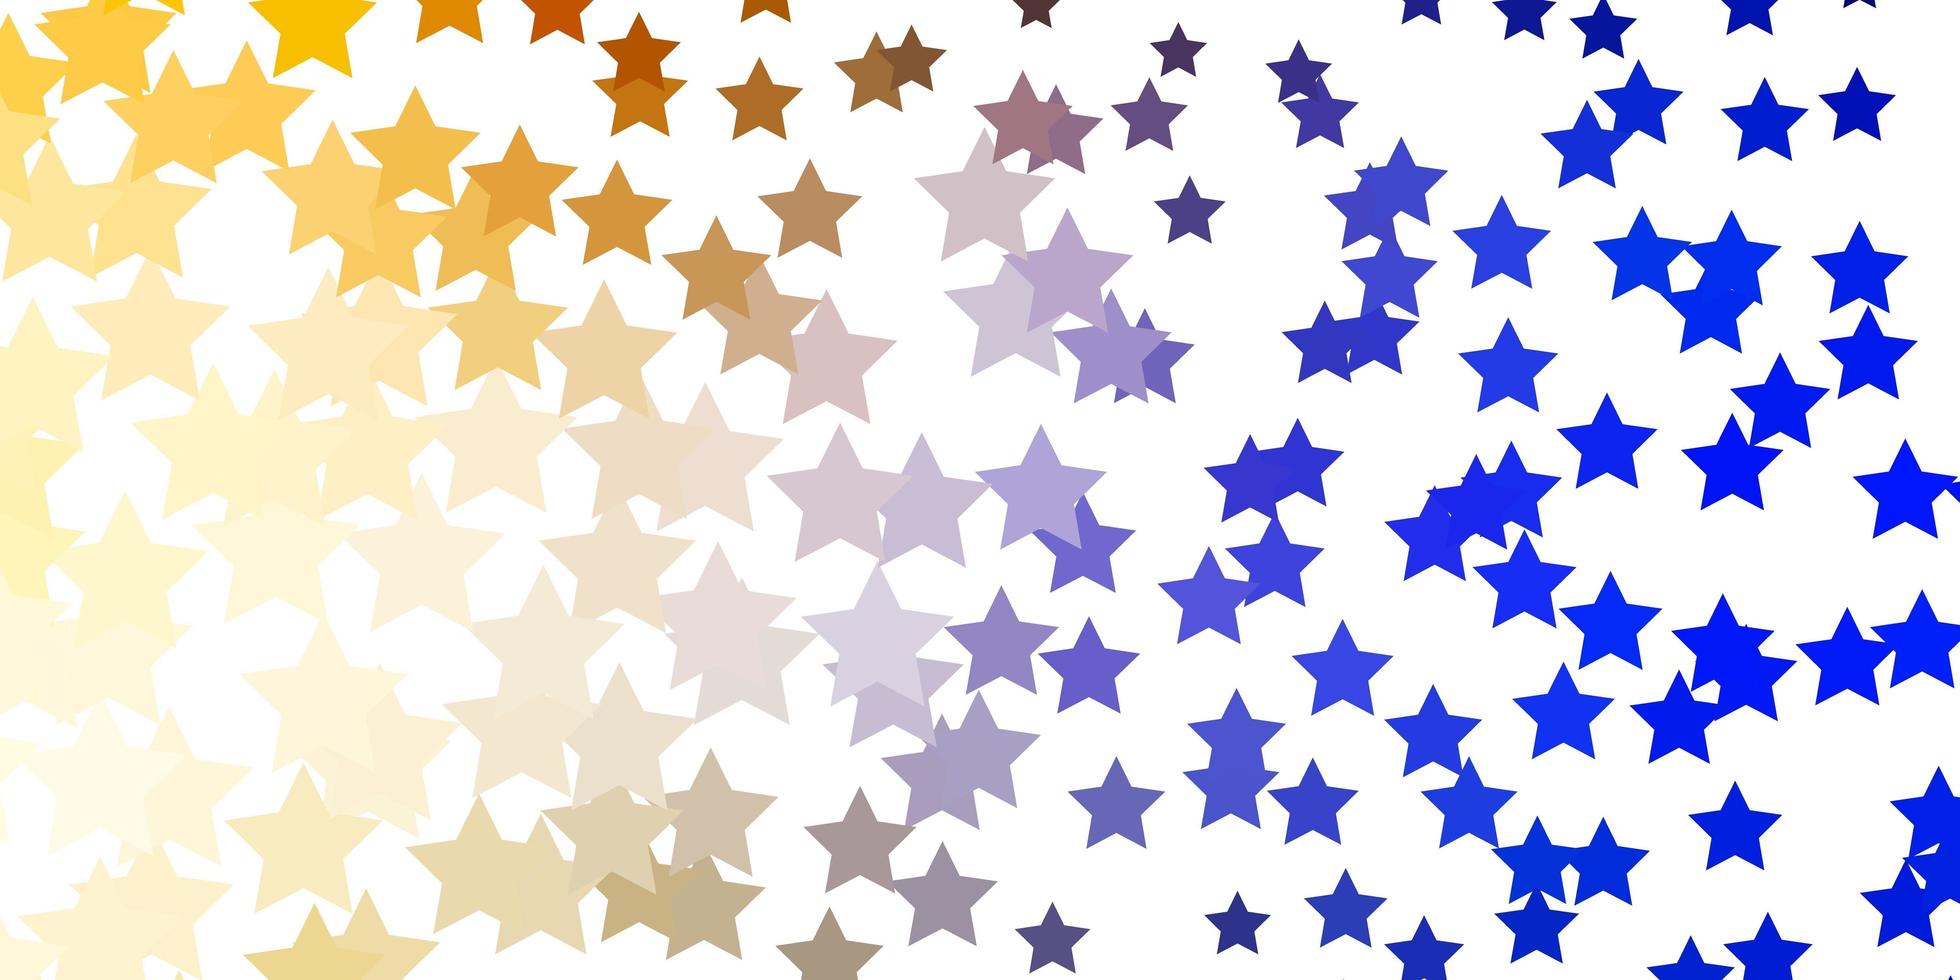 sfondo vettoriale giallo azzurro con stelle colorate illustrazione decorativa con stelle su modello astratto miglior design per il tuo banner poster pubblicitario